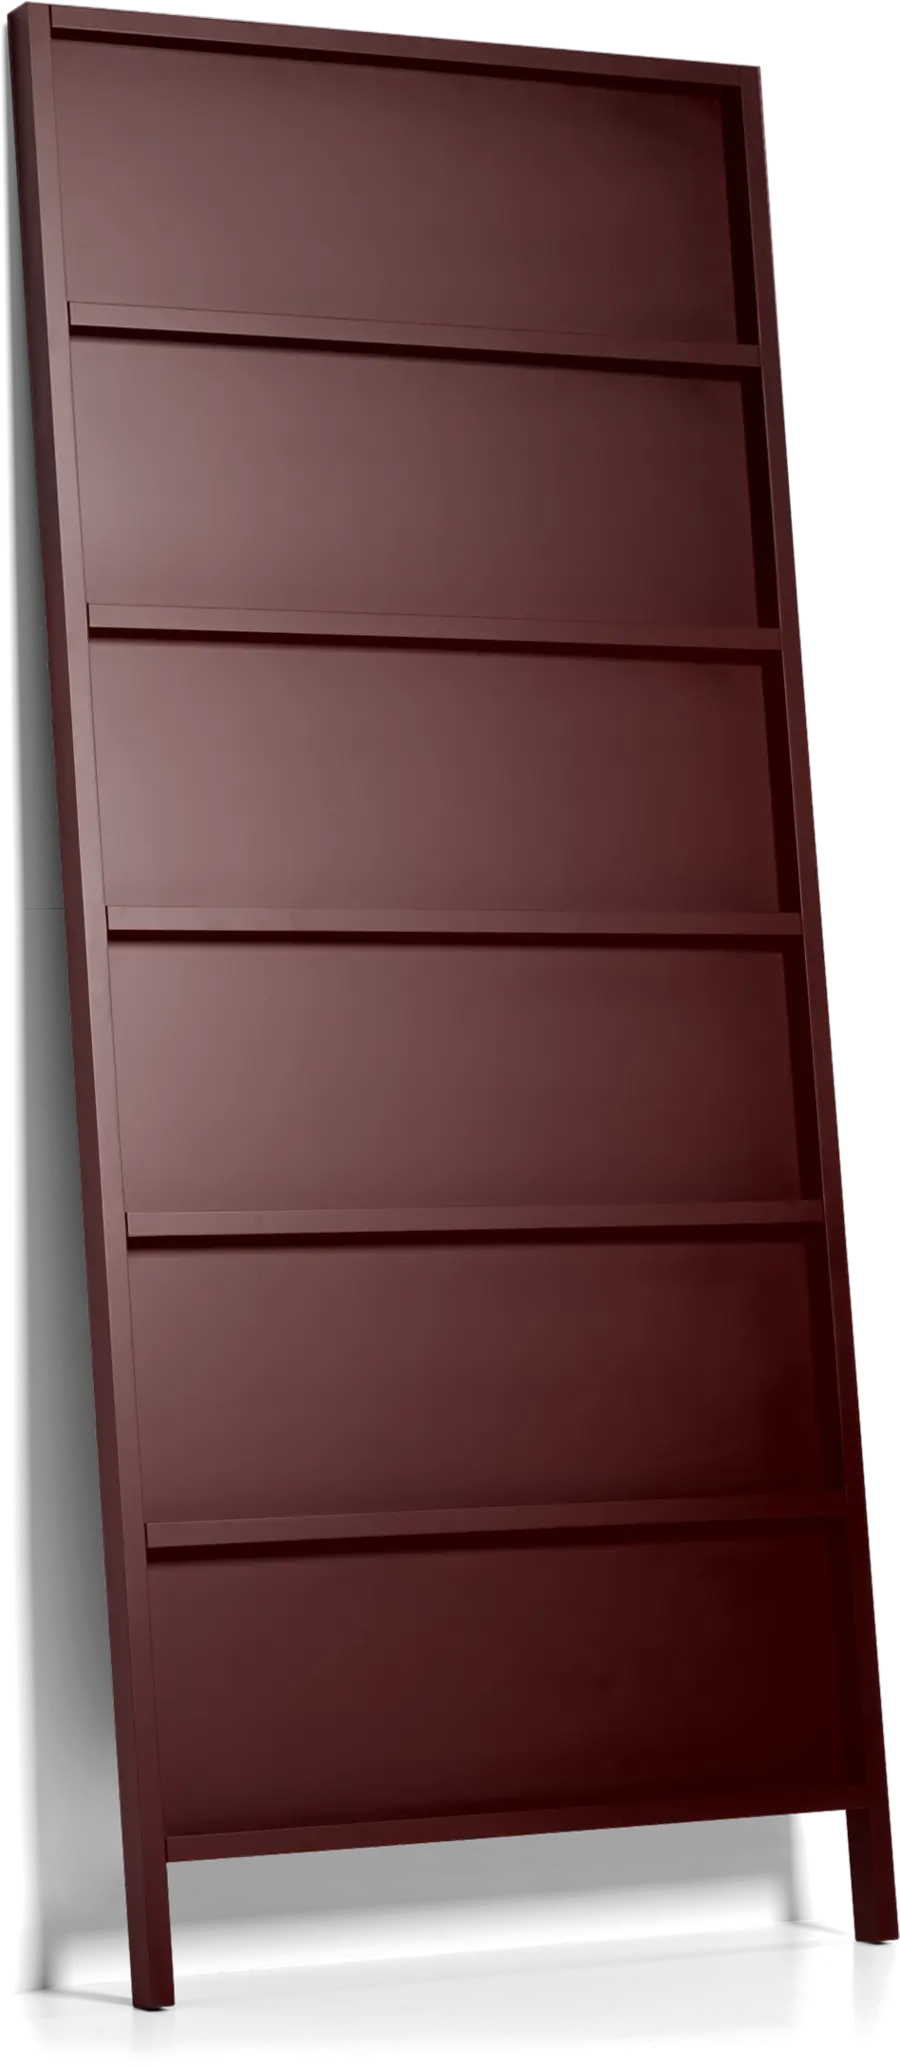 Oblique Big bookshelf sepia brown